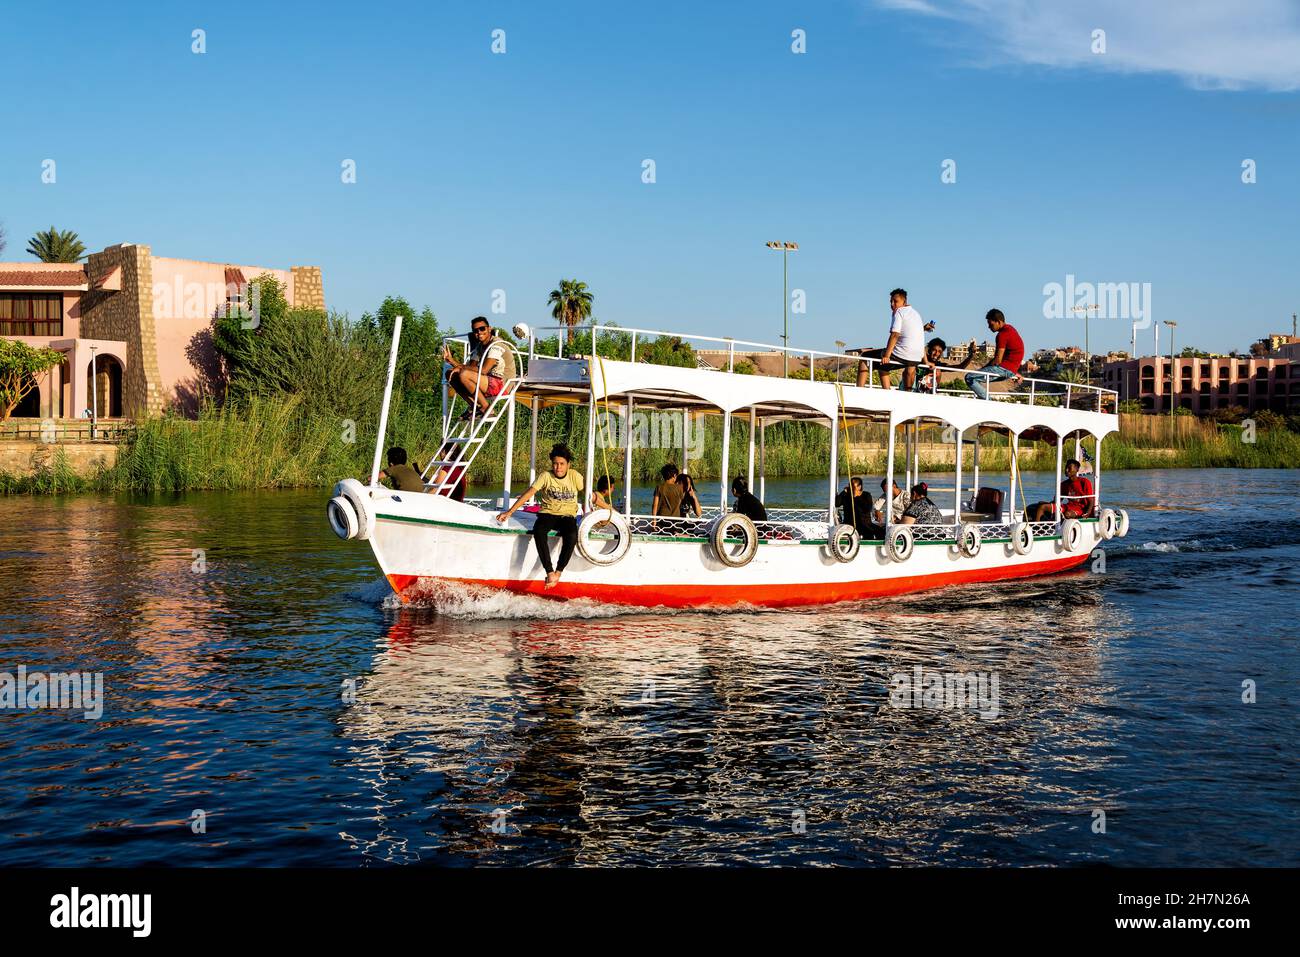 ASSUAN, ÄGYPTEN - 30. JULI 2021: Schiff voller Passagiere auf dem Nil in Assuan, Ägypten, am 30. Juli 2021 Stockfoto